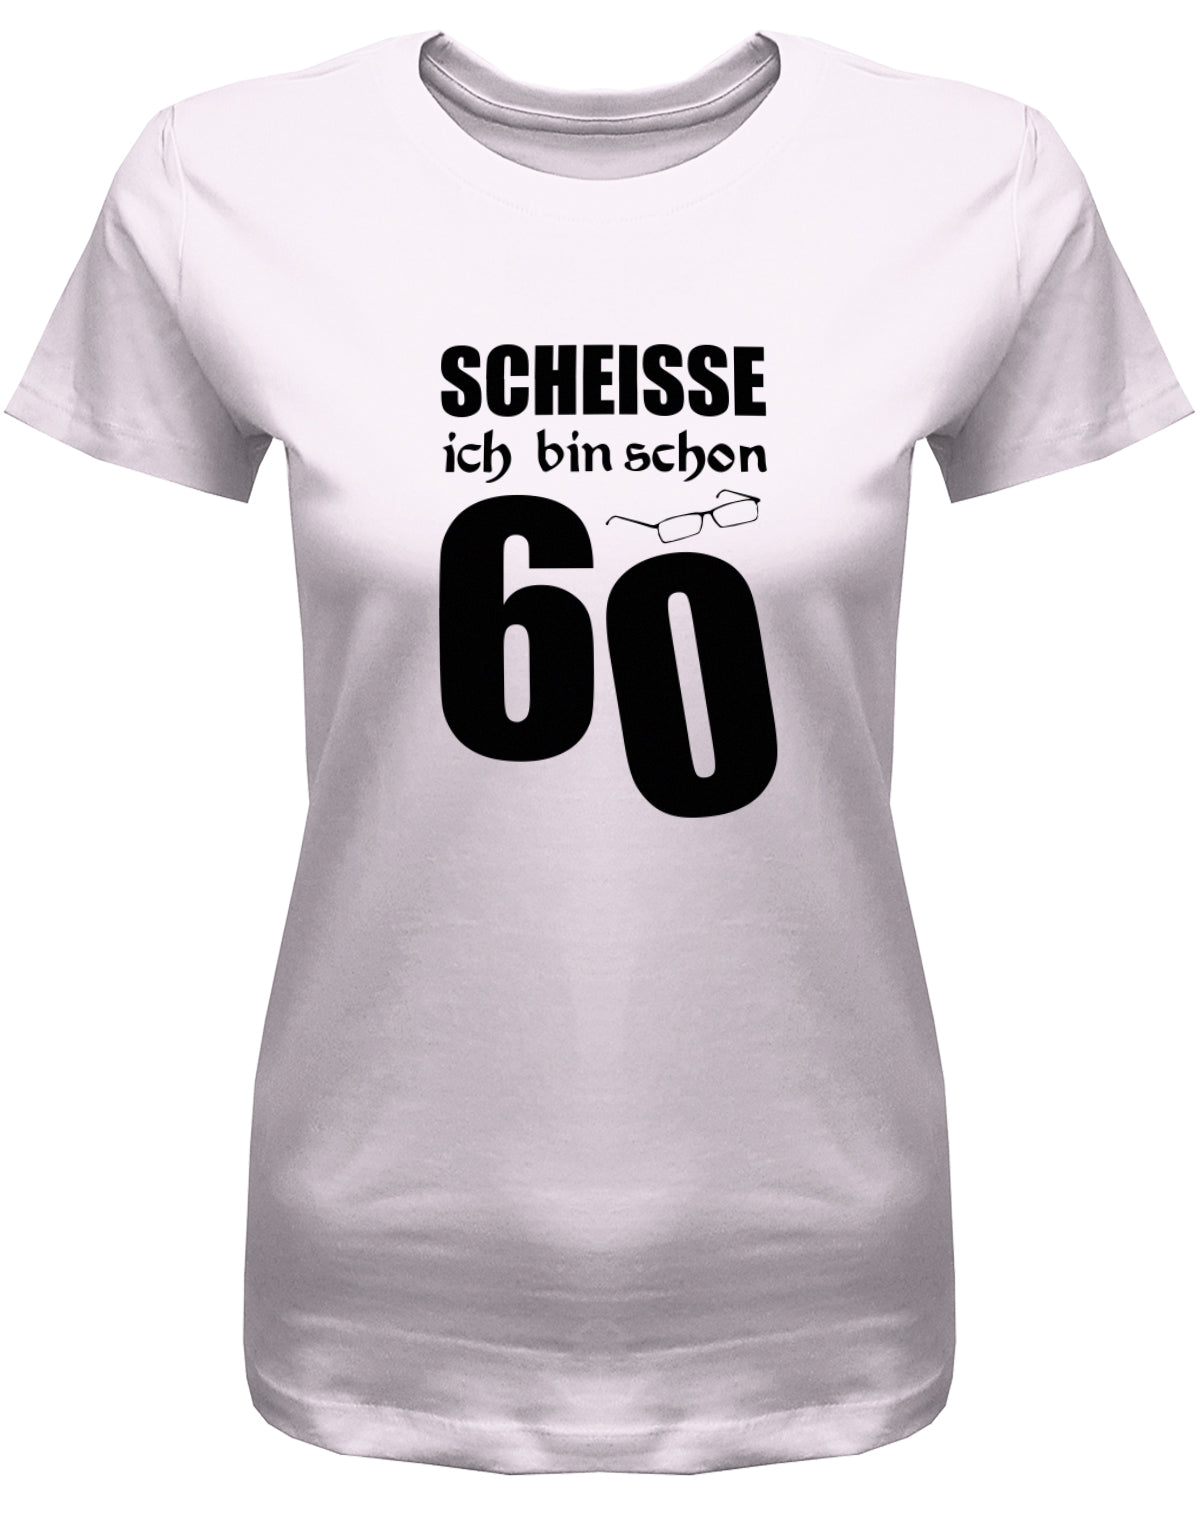 Lustiges T-Shirt zum 60. Geburtstag für die Frau Bedruckt mit Scheisse ich bin schon 60 Lesebrille. Rosa